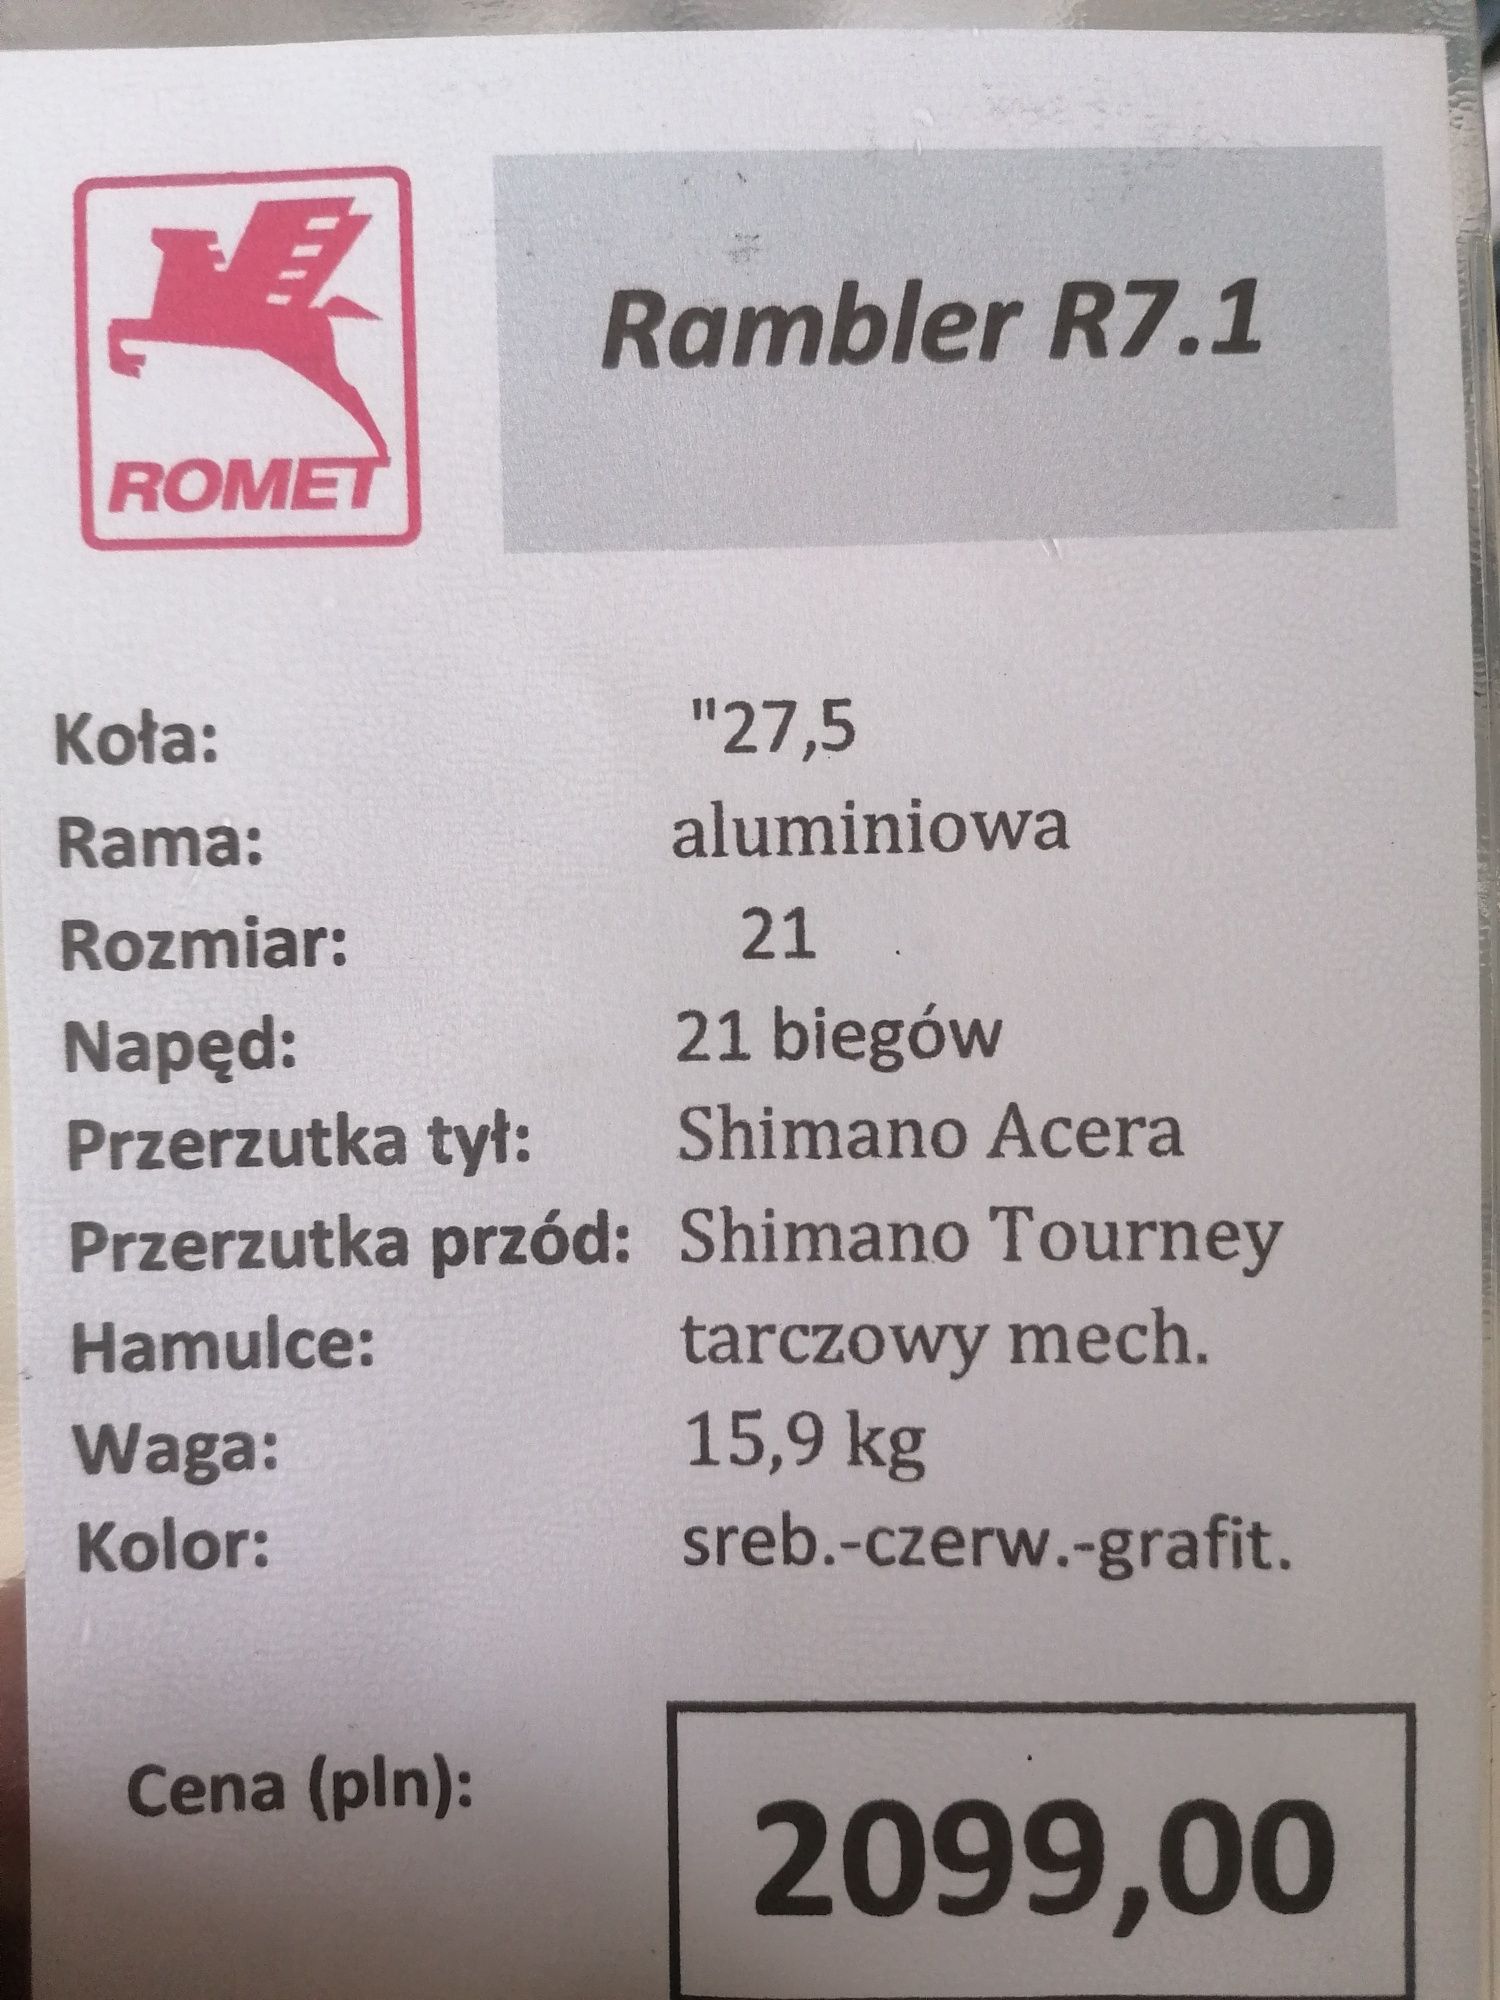 Rower Romet Rambler R7. 1 nowy, wyprzedaż - likwidacja sklepu!